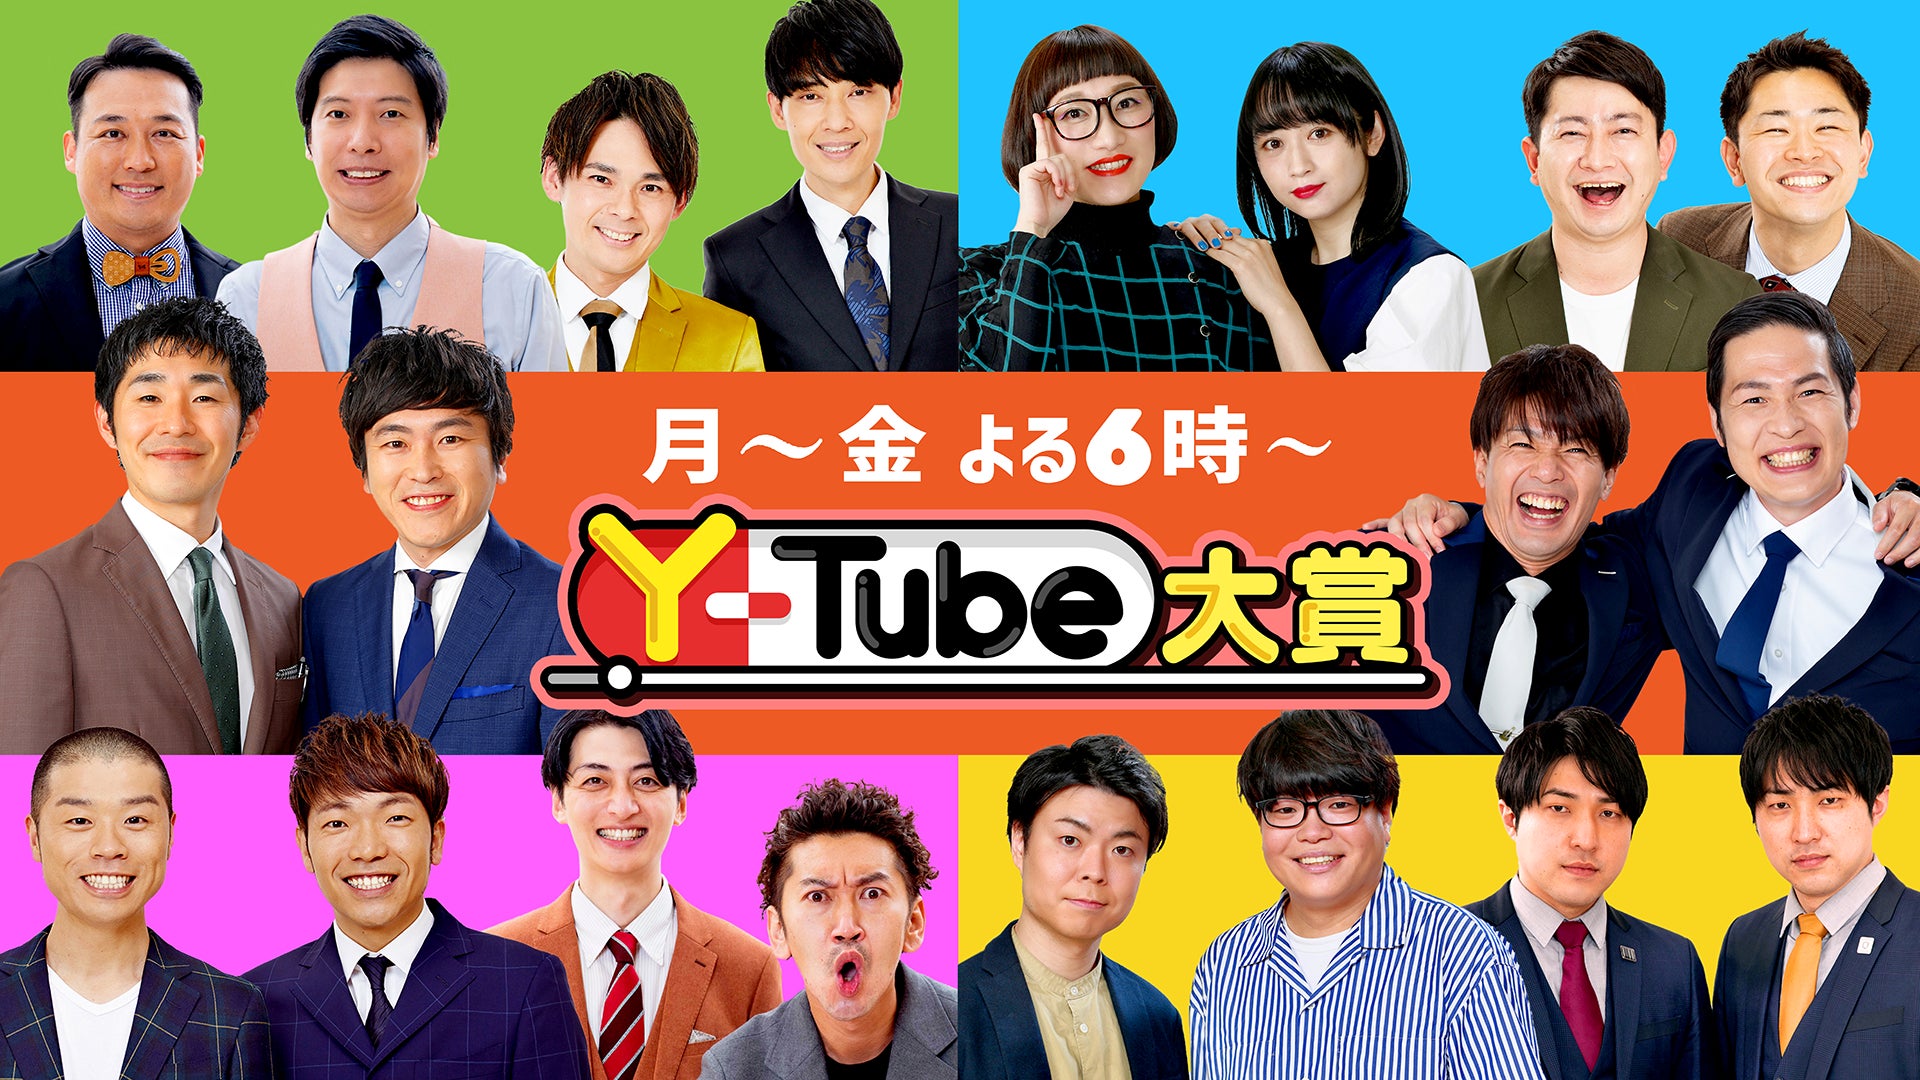 『Y-Tube大賞』吉本芸人YouTube動画の中から、厳選されたおもしろ動画を紹介‼7/3（月）から新レギュラーが加入し、番組リニューアル‼